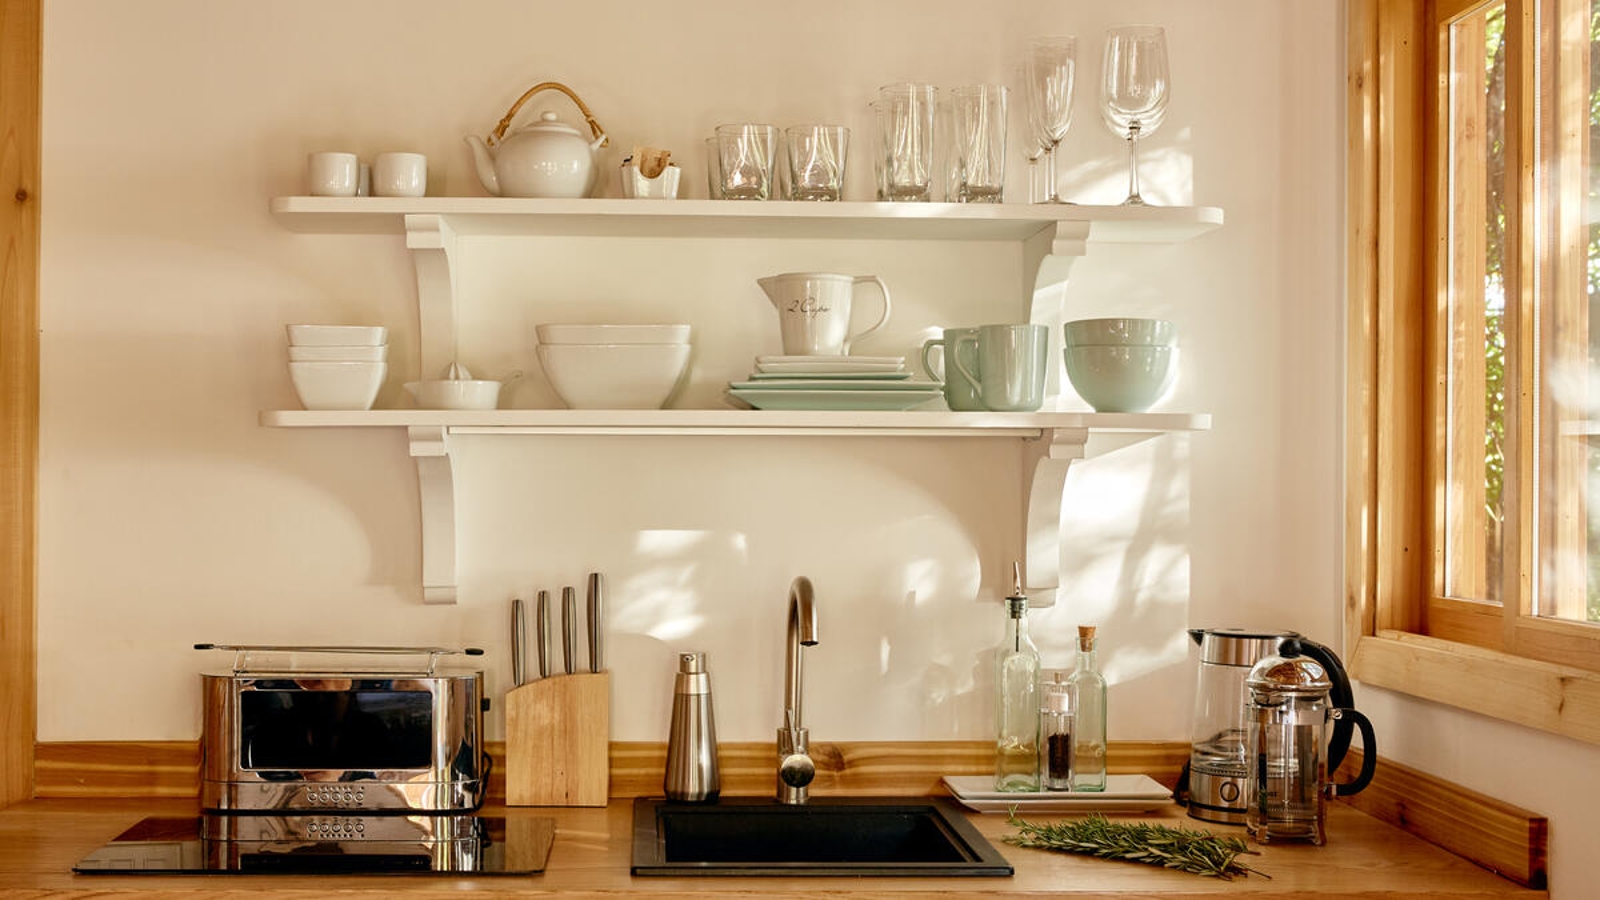 Airbnb Kitchen Essentials: What Hosts Need in Their Kitchen